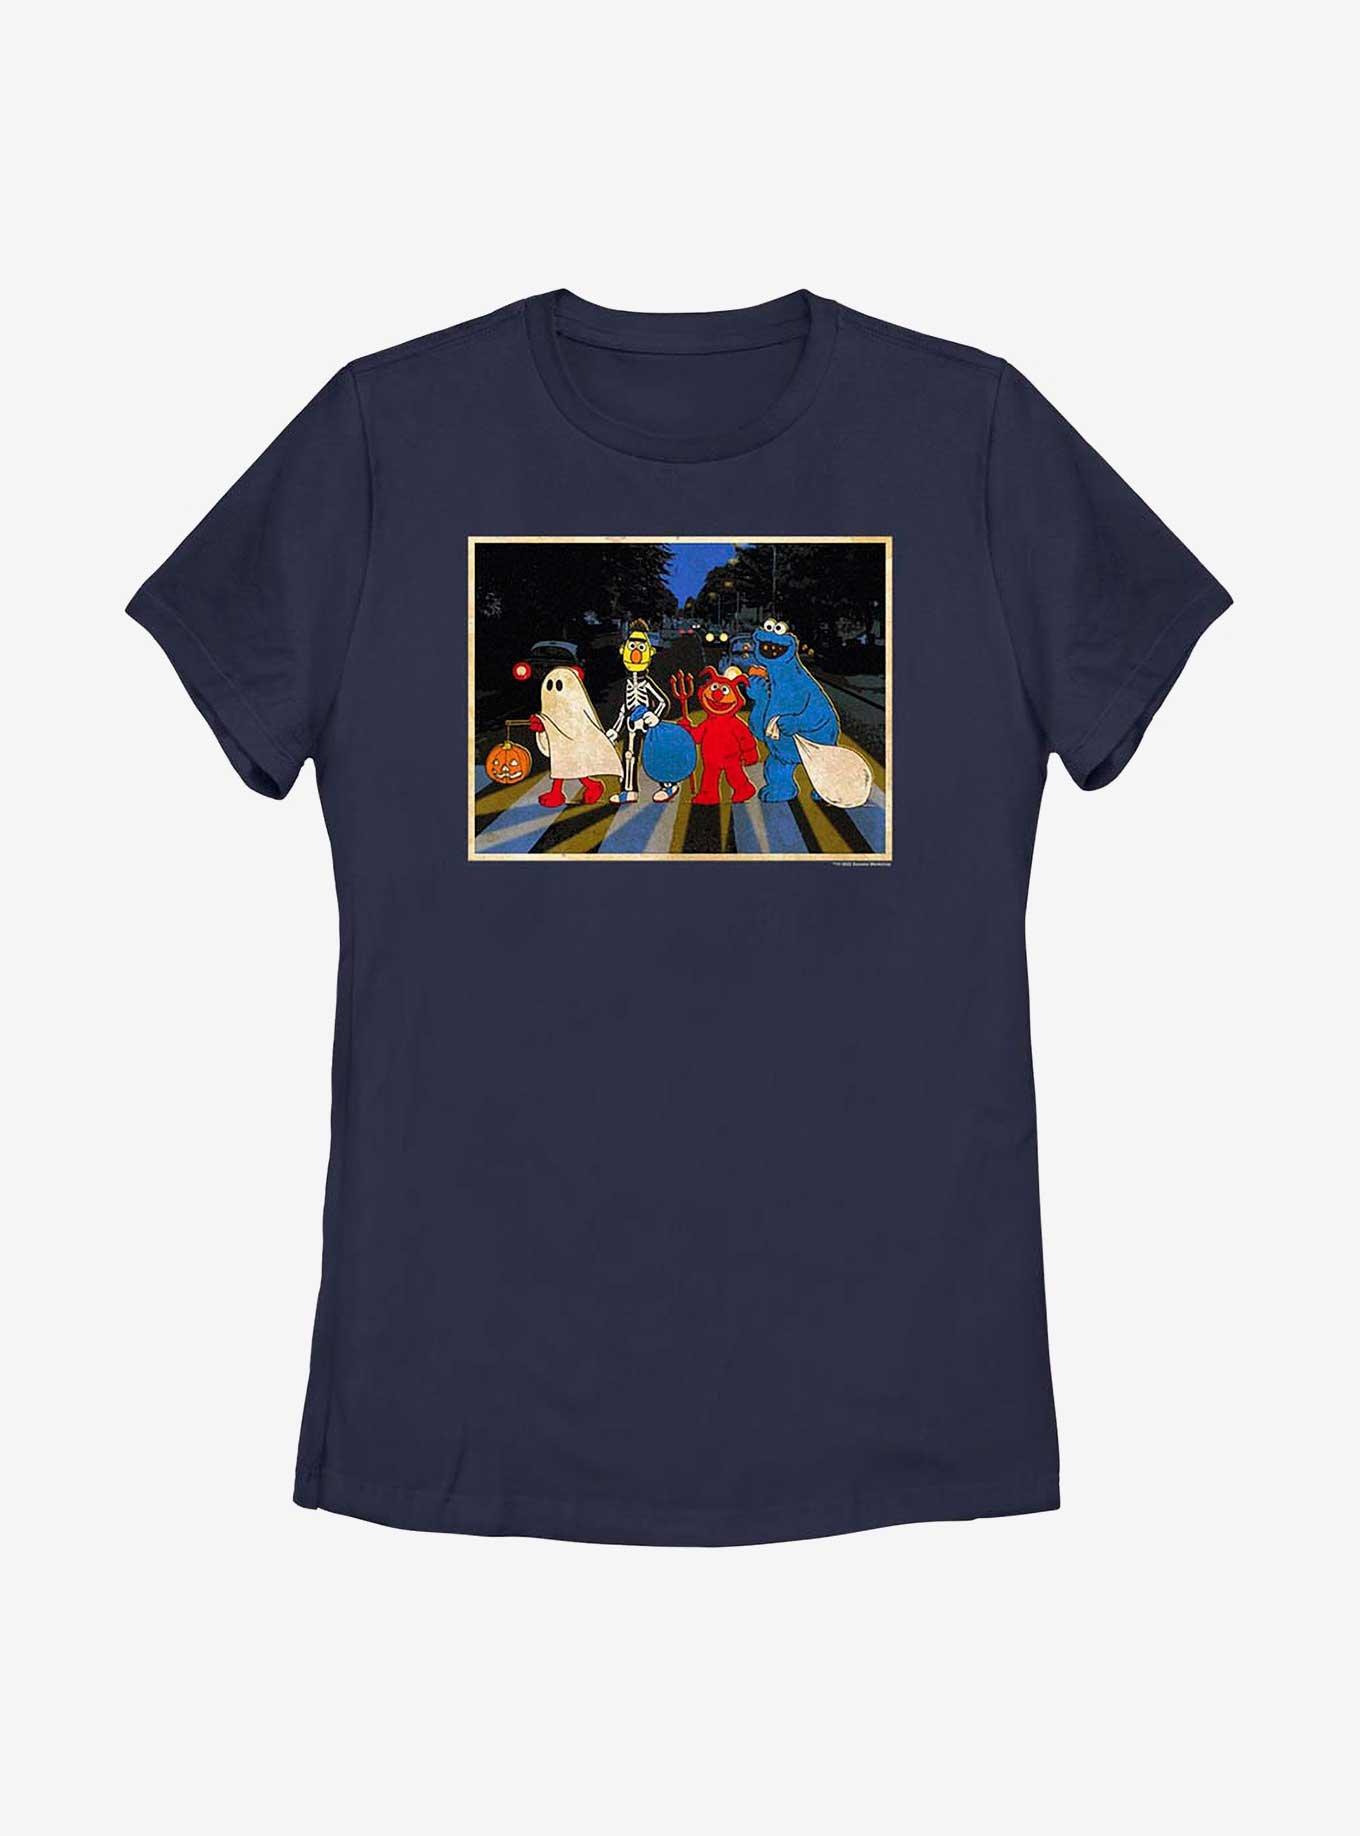 NECHOLOGY Womens T-Shirts Sesame Street Shirt Women T Shirt Short Long  Sleeve Crew Neck Tee Tops Blouse